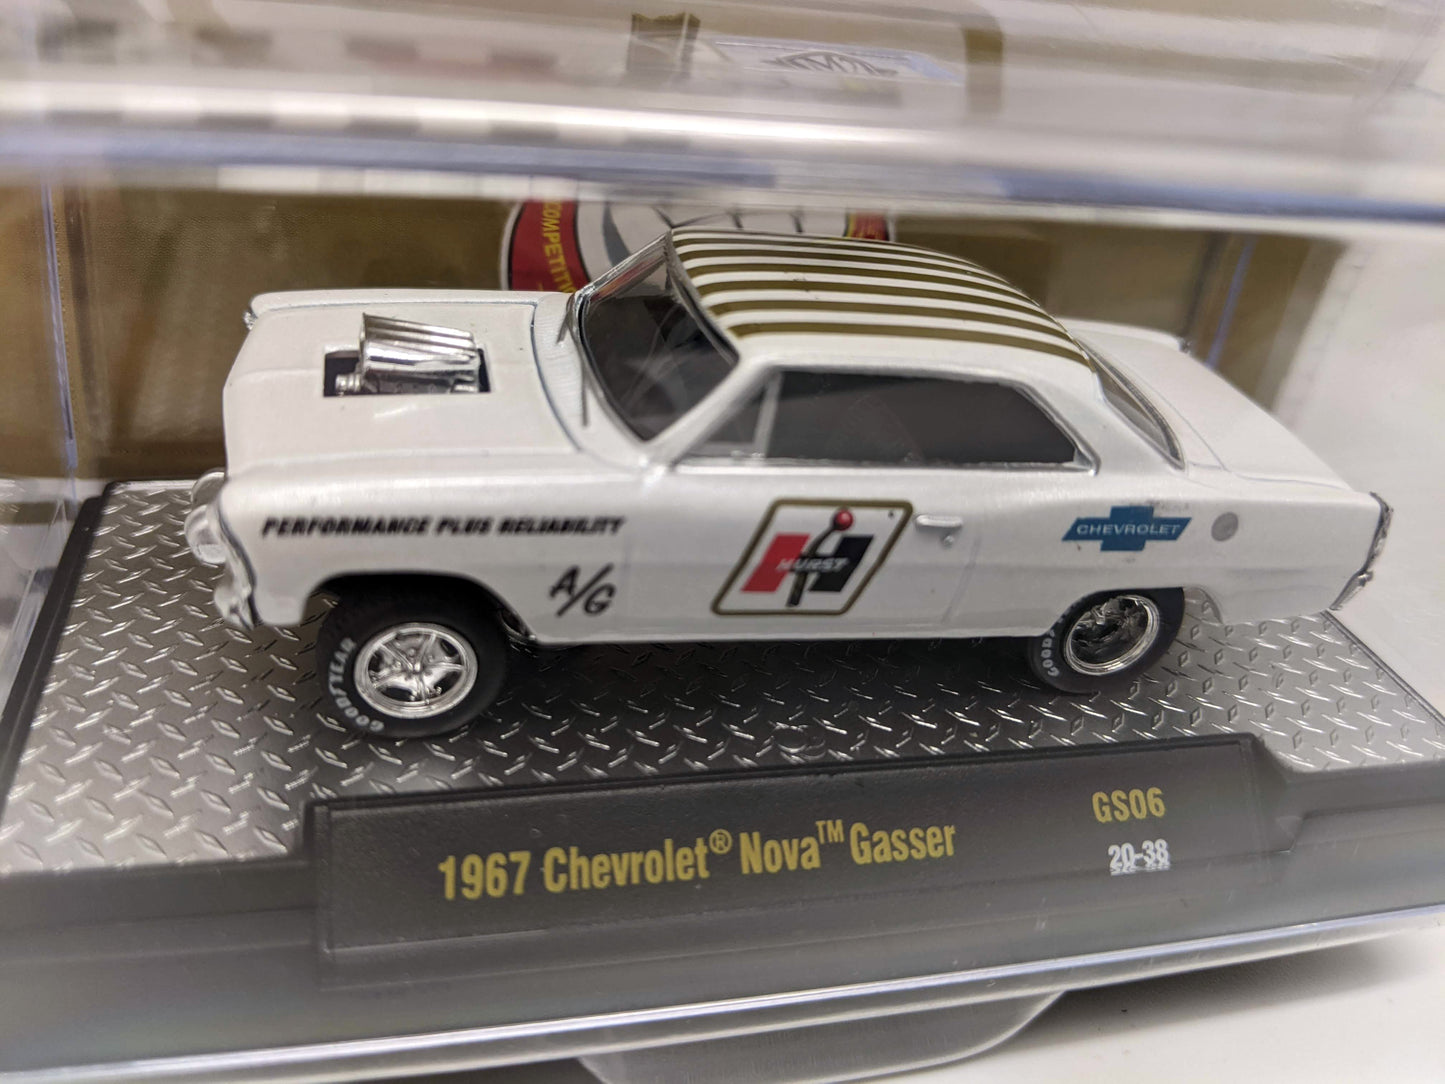 M2 1967 Chevrolet Nova Gasser - Hurst